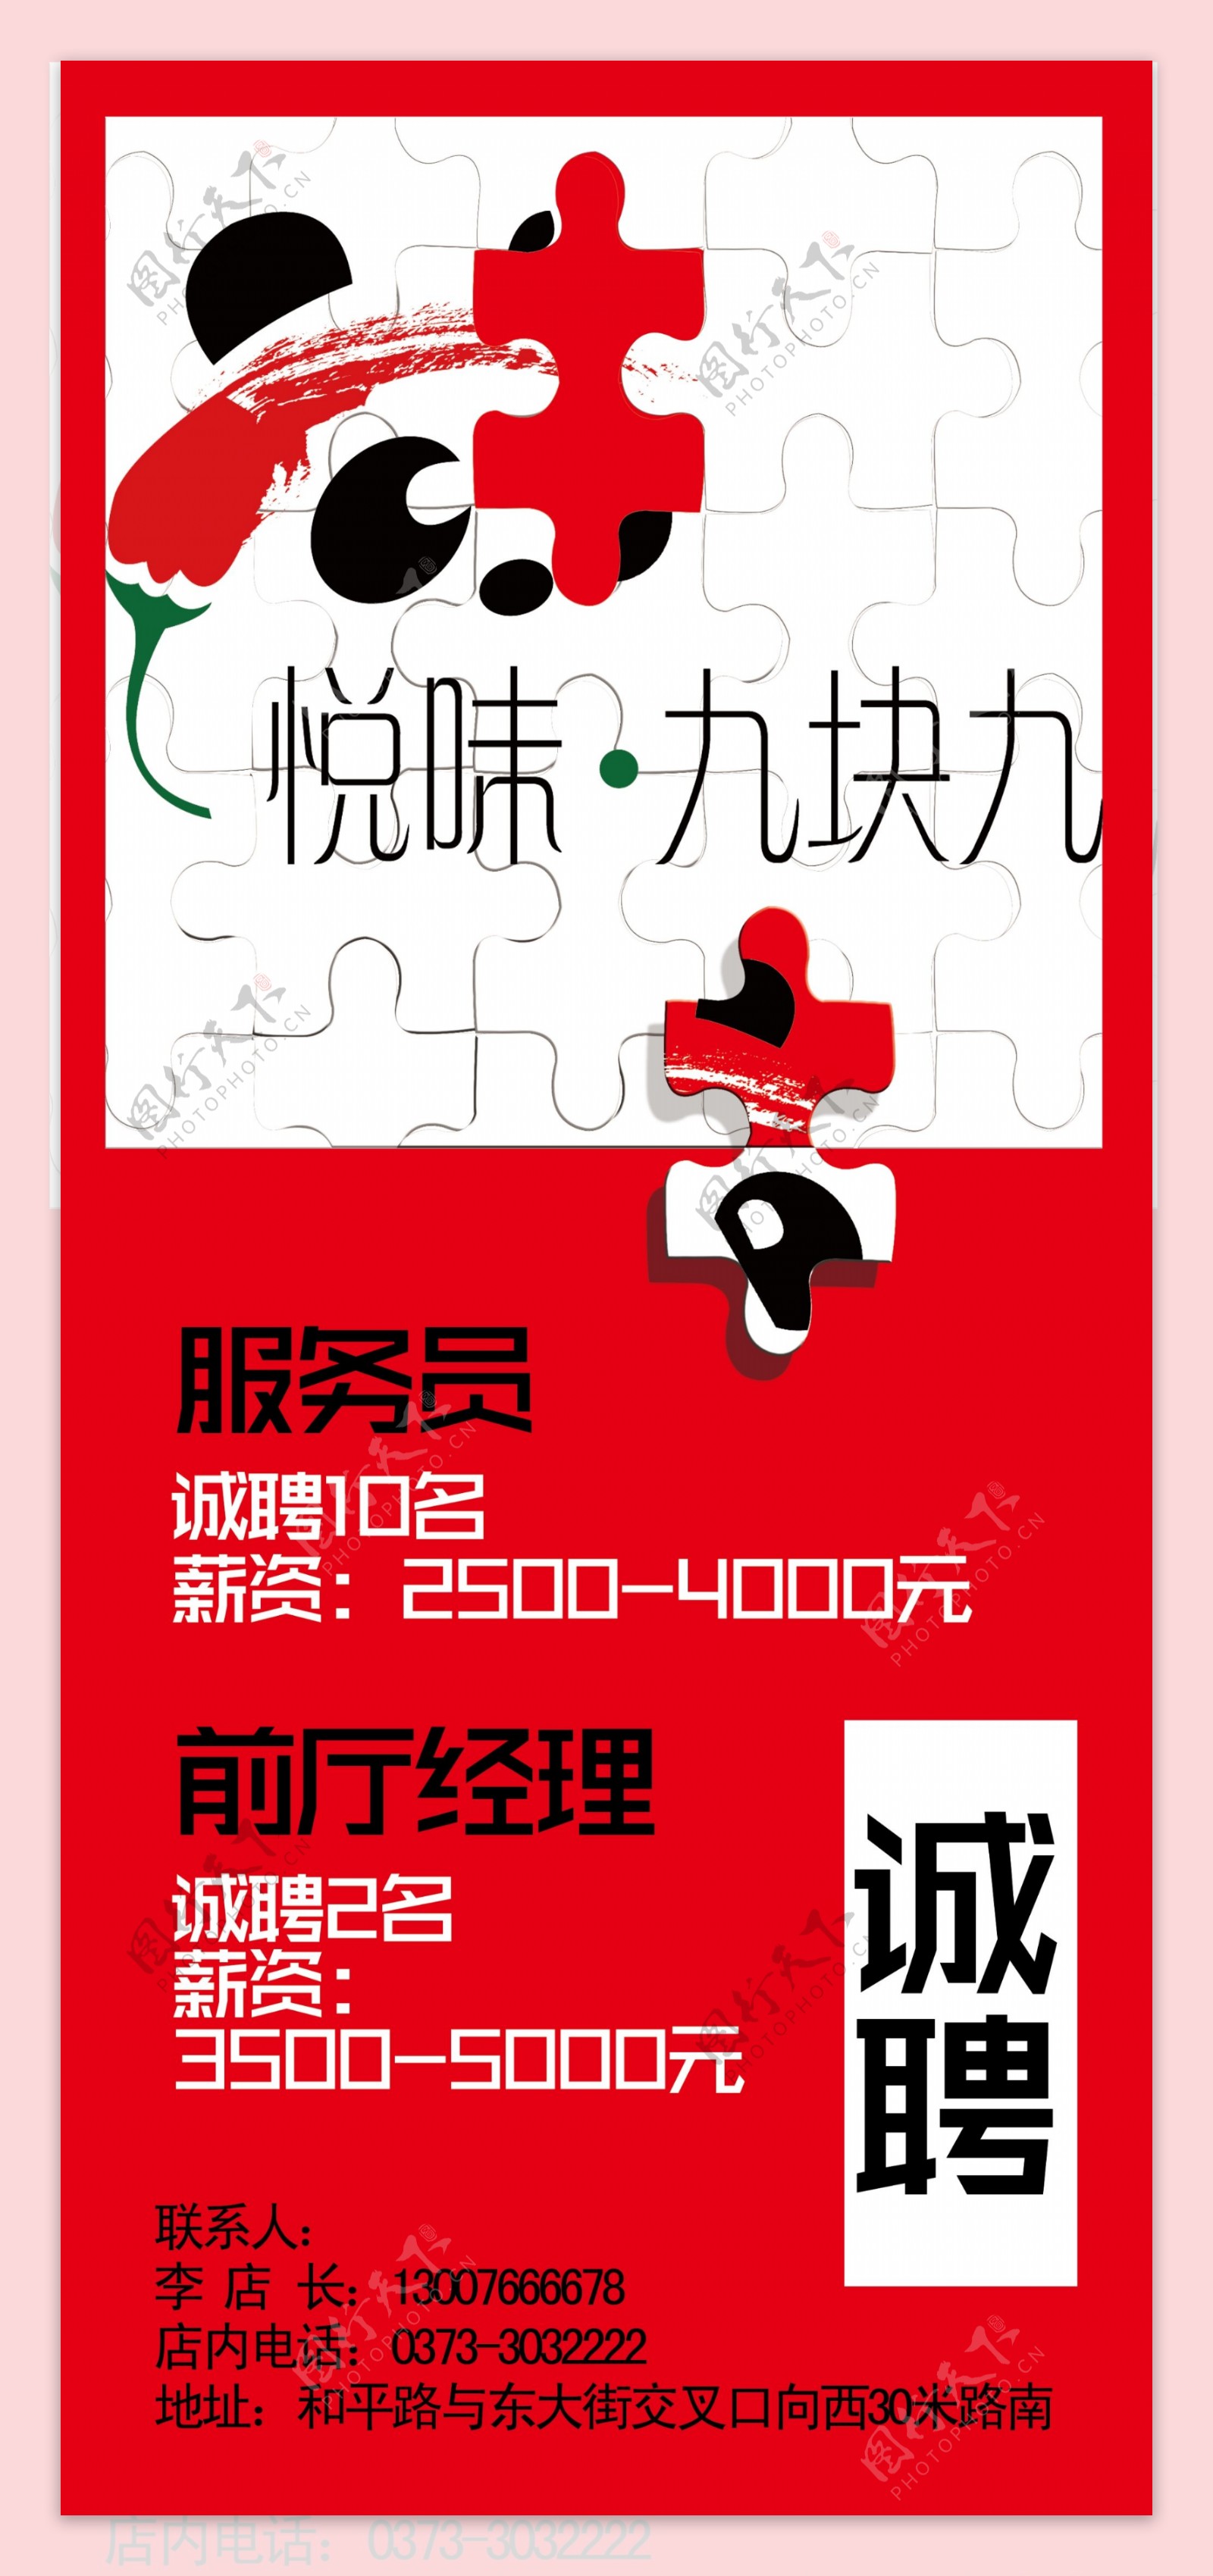 川菜馆餐饮行业招聘海报设计高清PSD下载